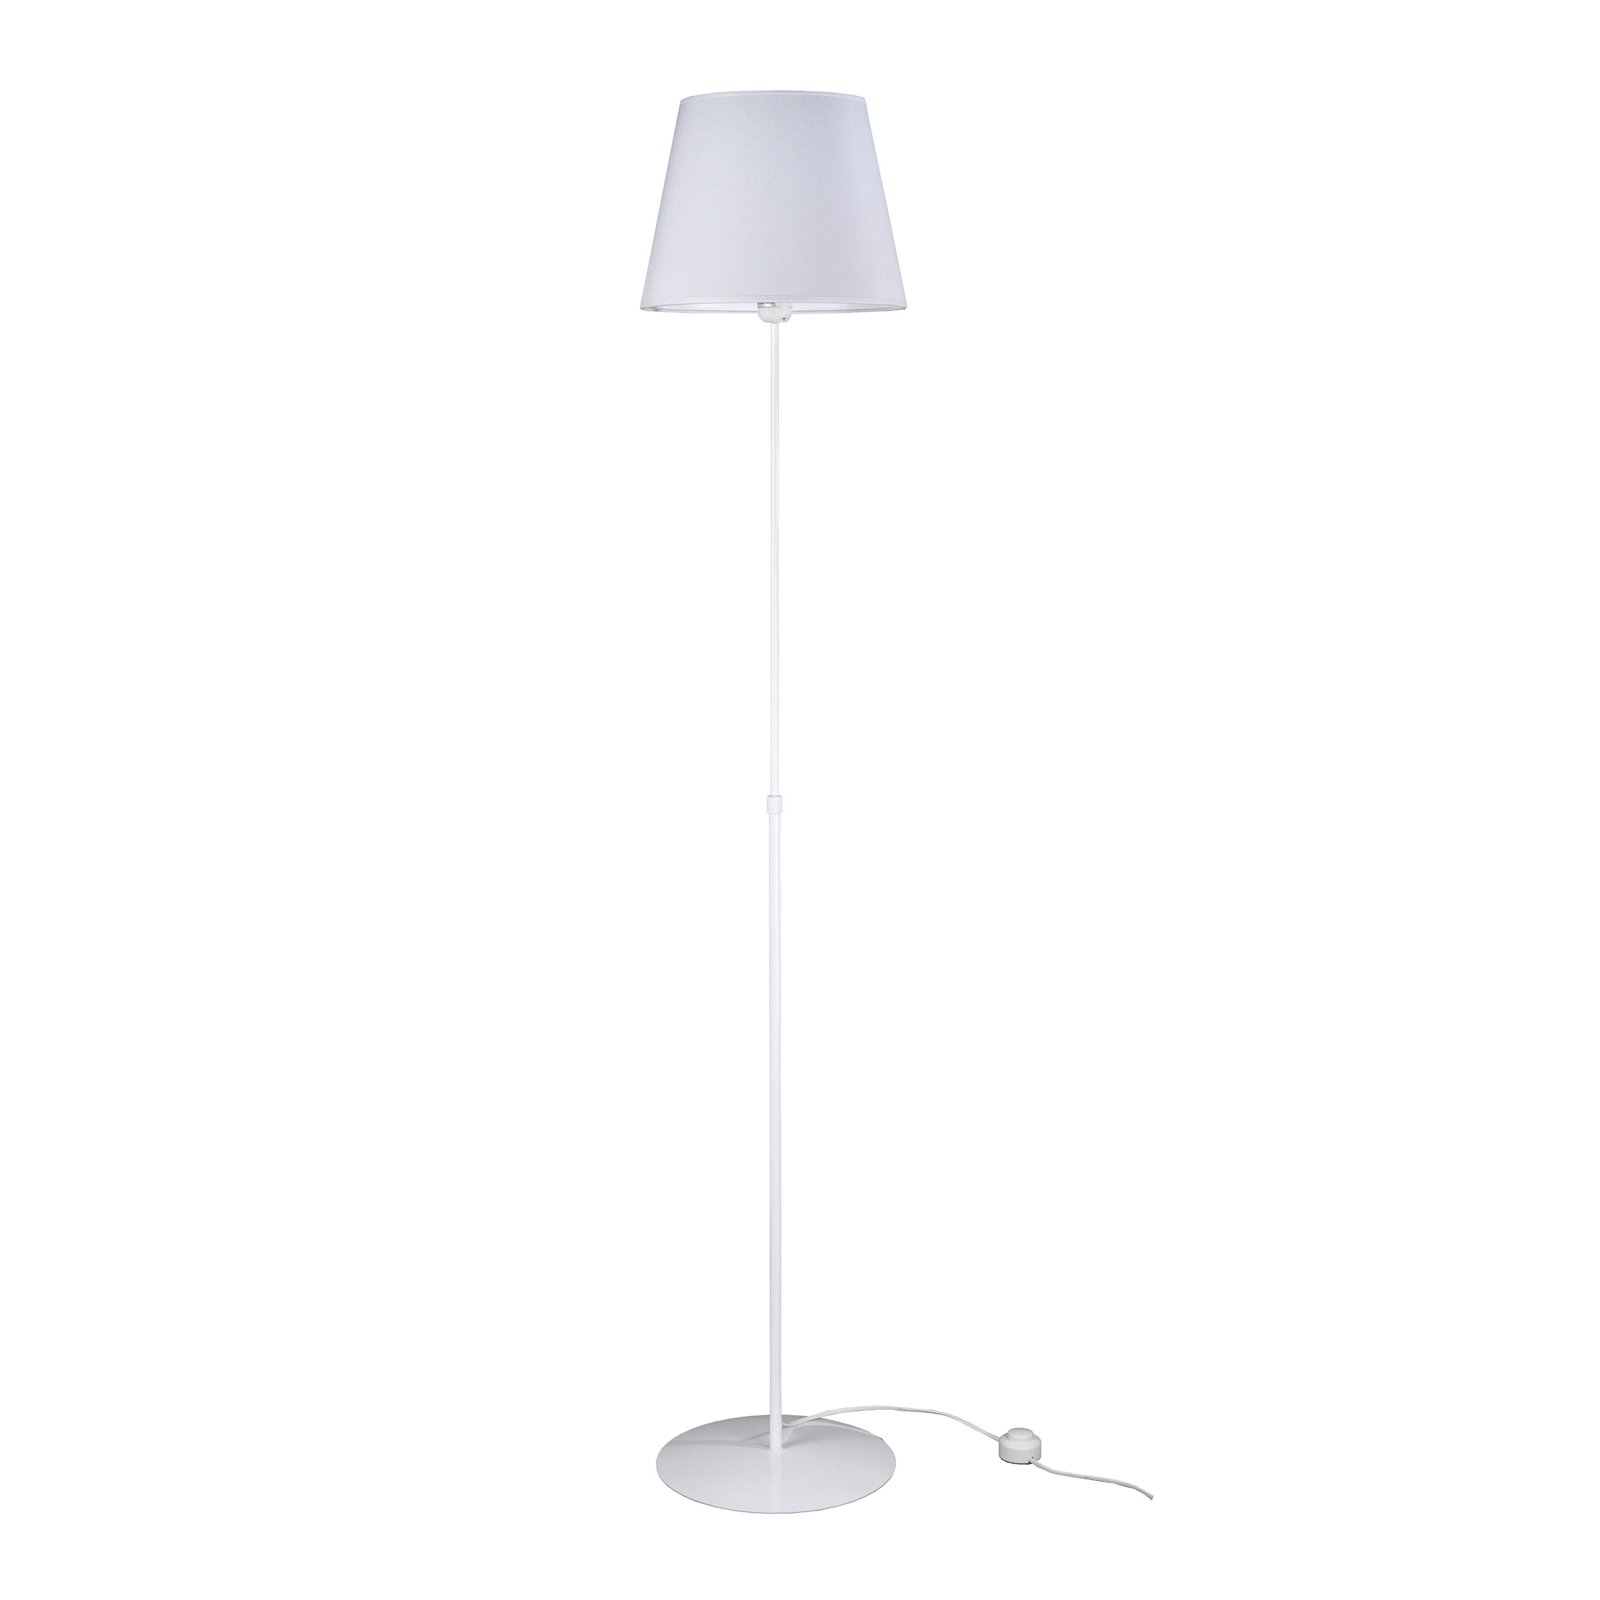 Aluminor Store Stehlampe, weiß/weiß